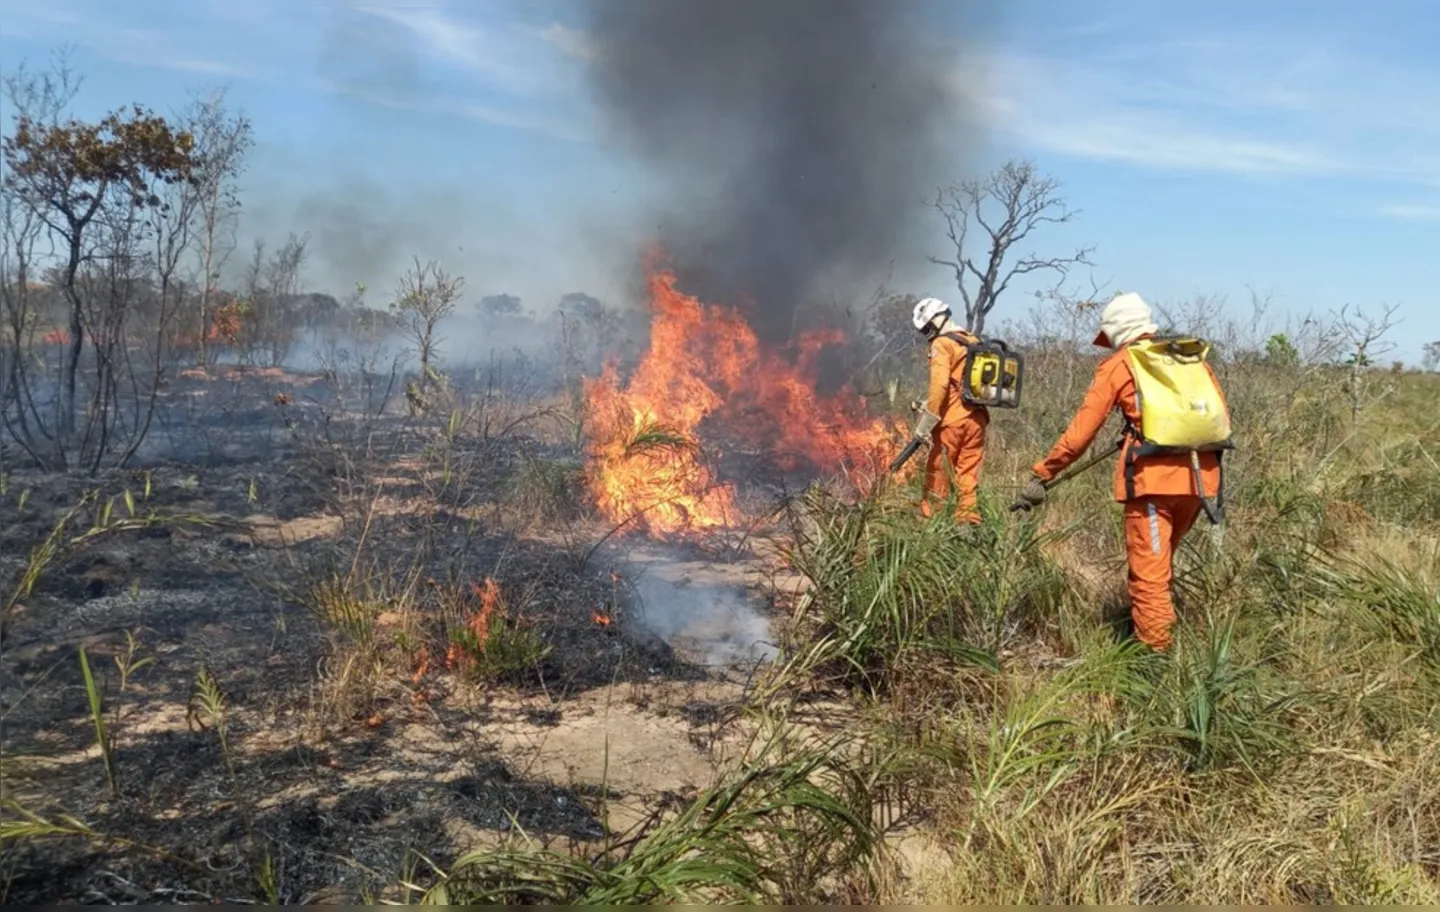 Regiões de vegetação em Ibicoara e Iraquara foram atingidas pelo fogo.